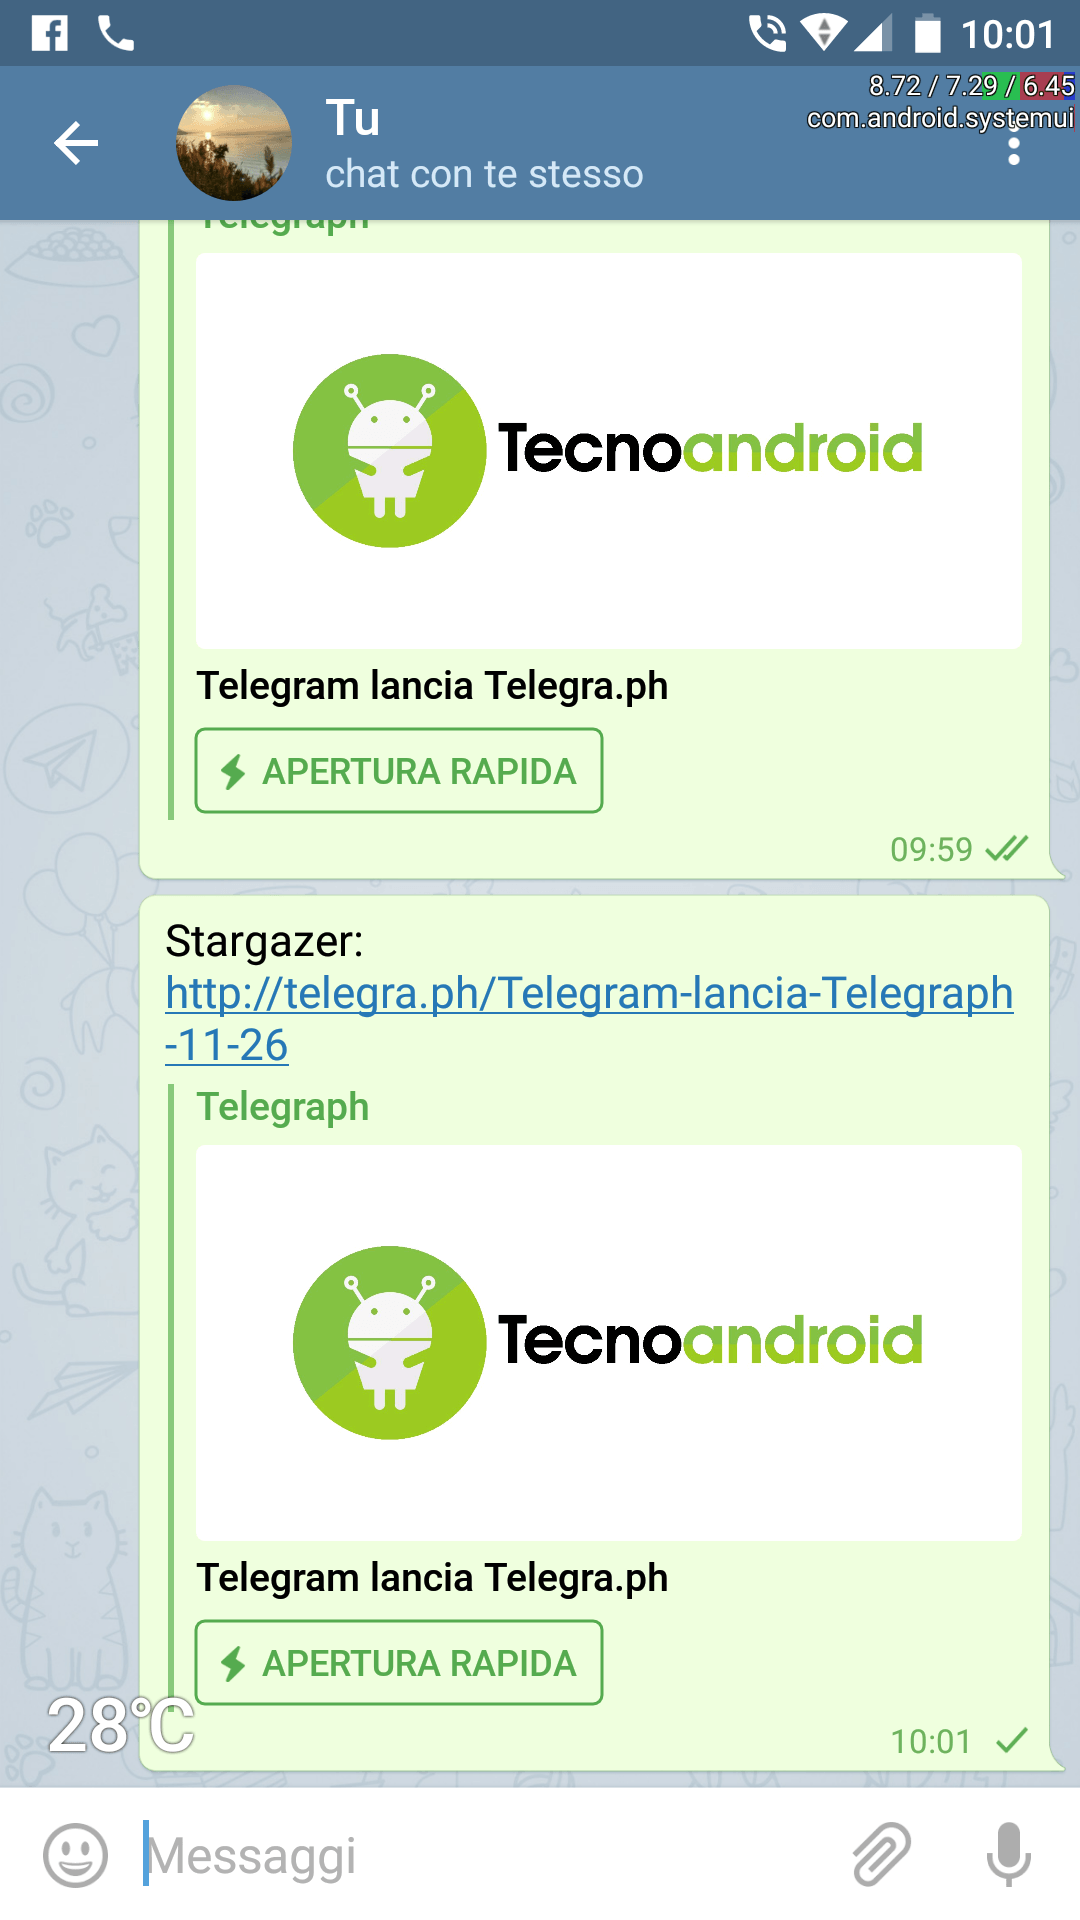 Telegram lancia Telegraph